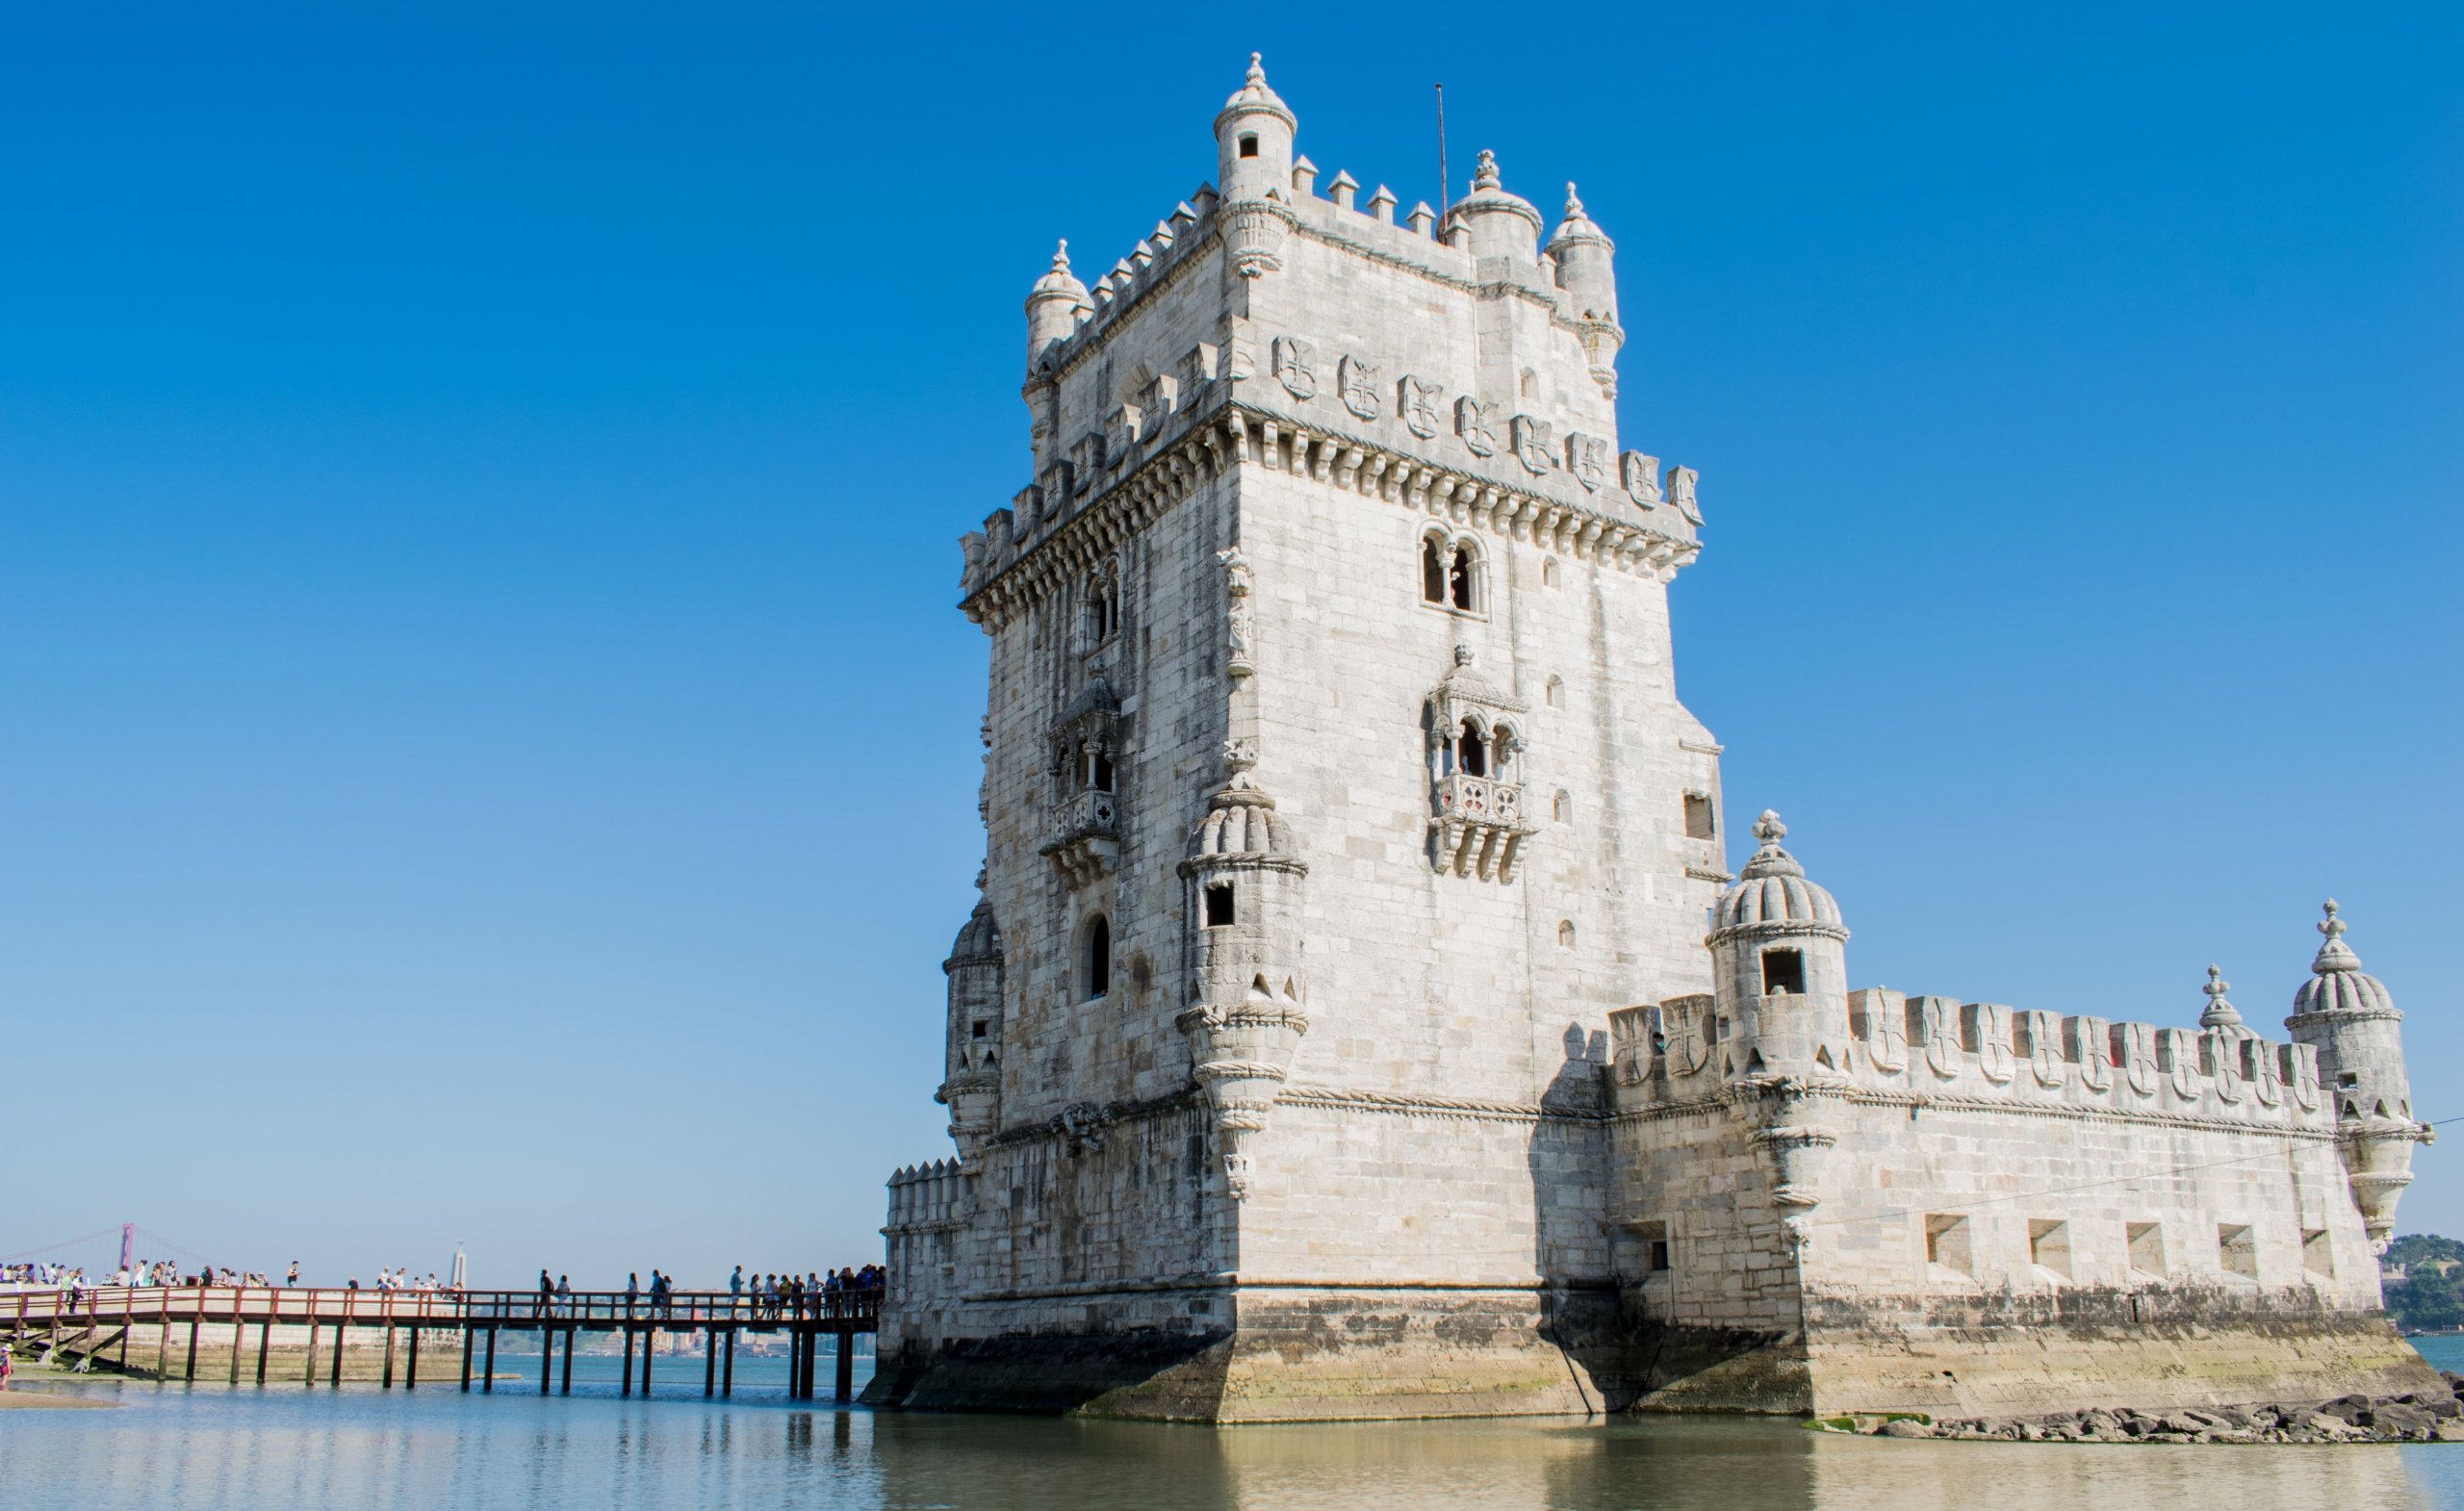 Castelo de São Jorge. Imagem disponível em Pexels.